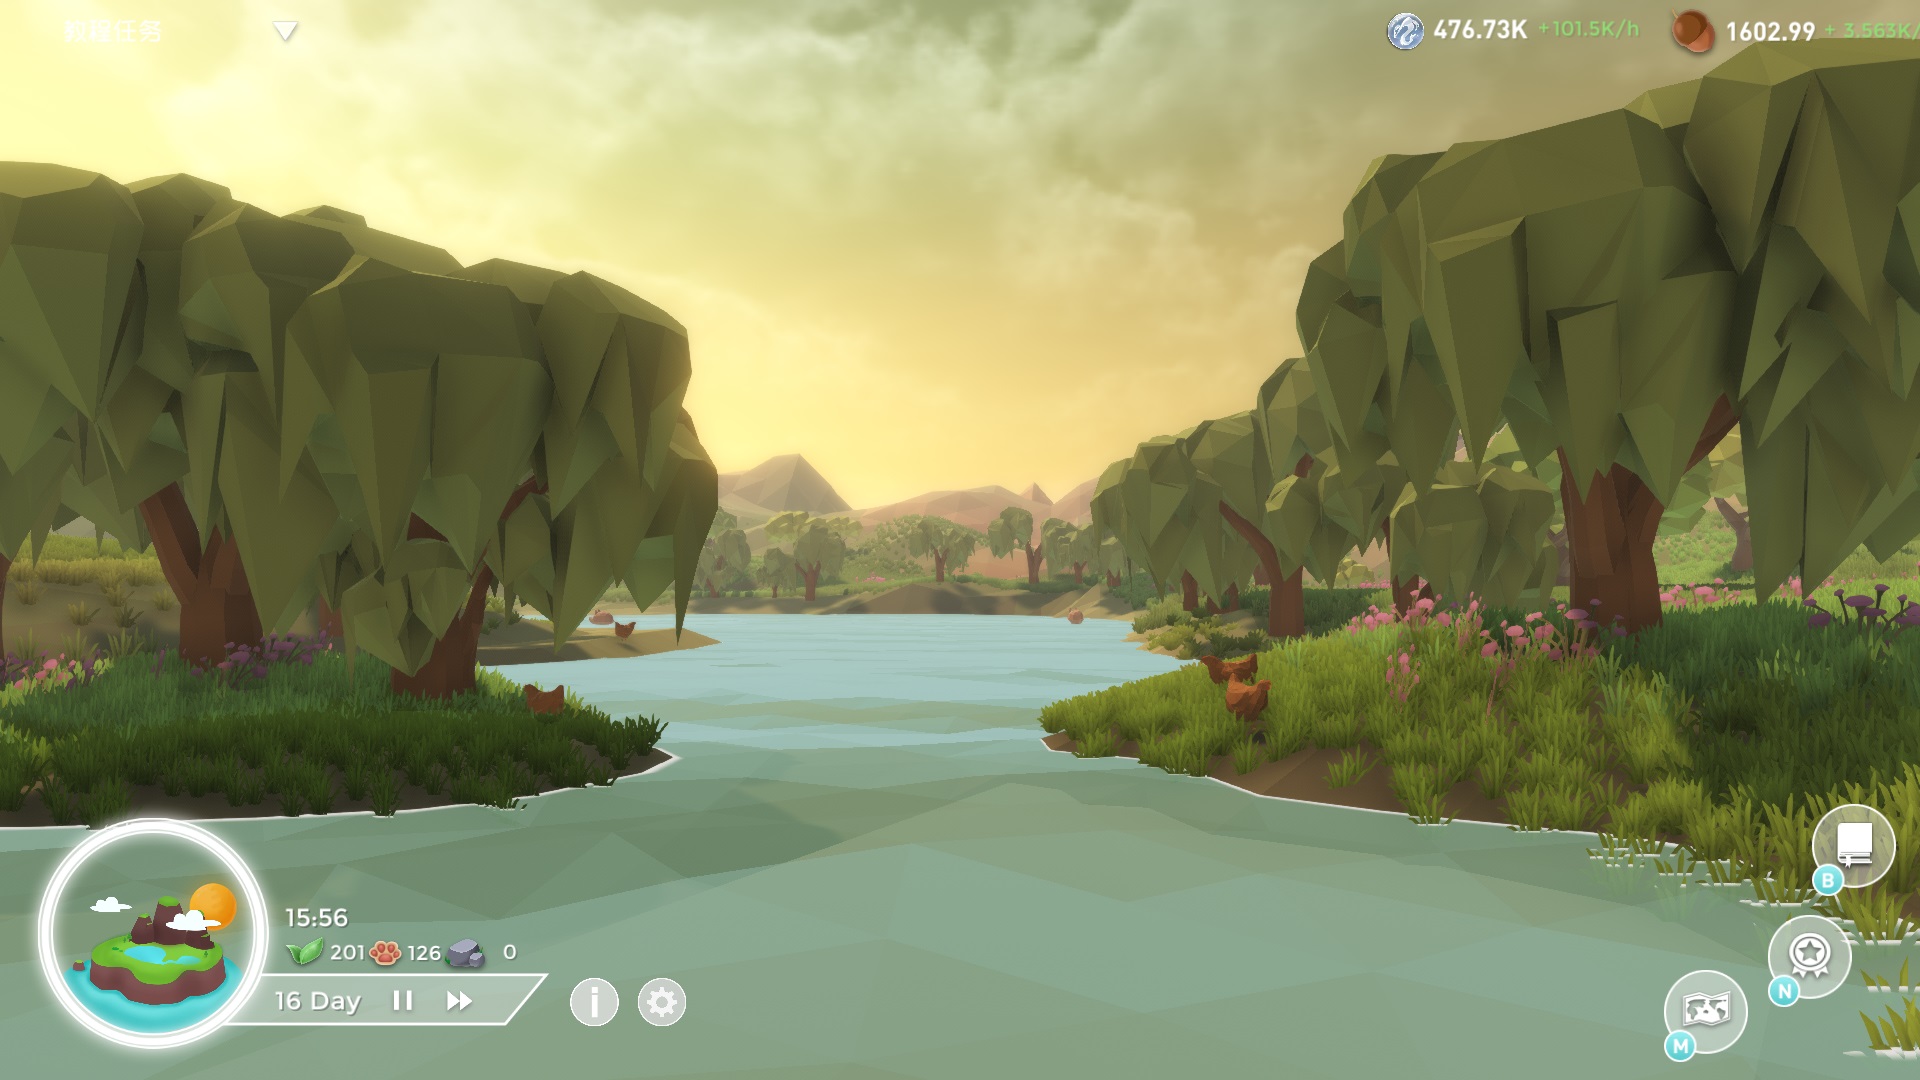 成为海岛之主 佛系养成游戏《海岛故事》Steam页面公开